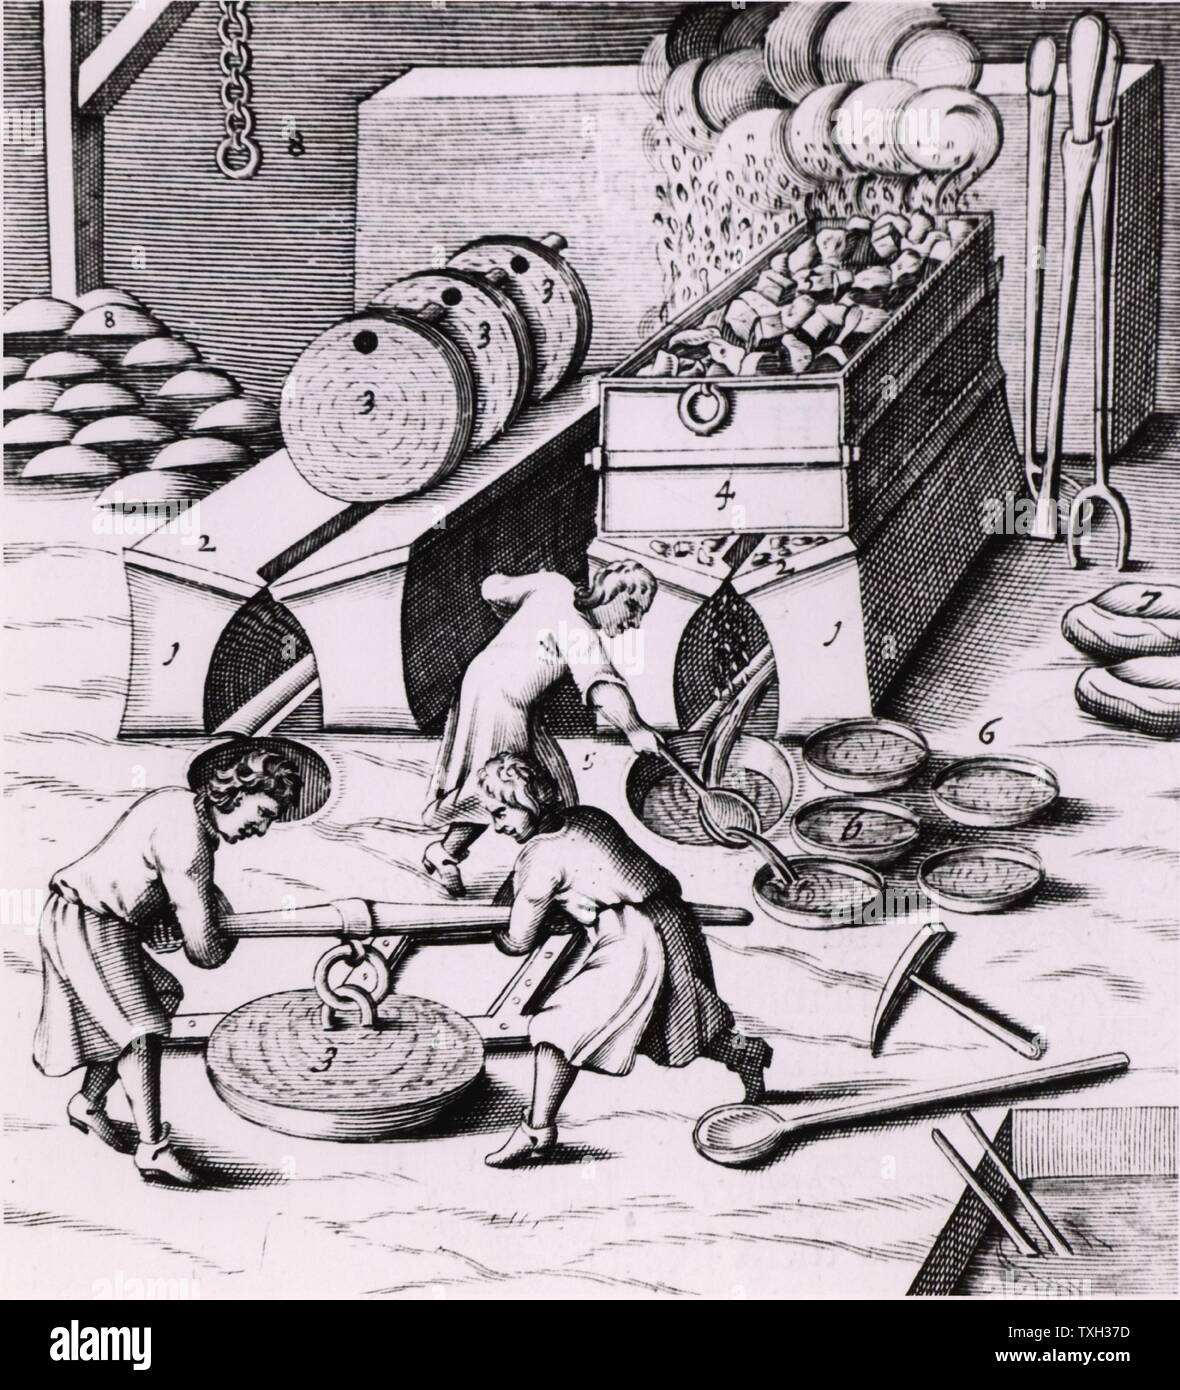 Der Verhüttung von Kupfer. Aus einer 1683 Englische Ausgabe von Lazarus Ercker' Beschreibung allerfurnemisten Ertzt mineralischen- und Berckwercksarten" ursprünglich in Prag im Jahr 1574 veröffentlicht. Kupferstich. Stockfoto